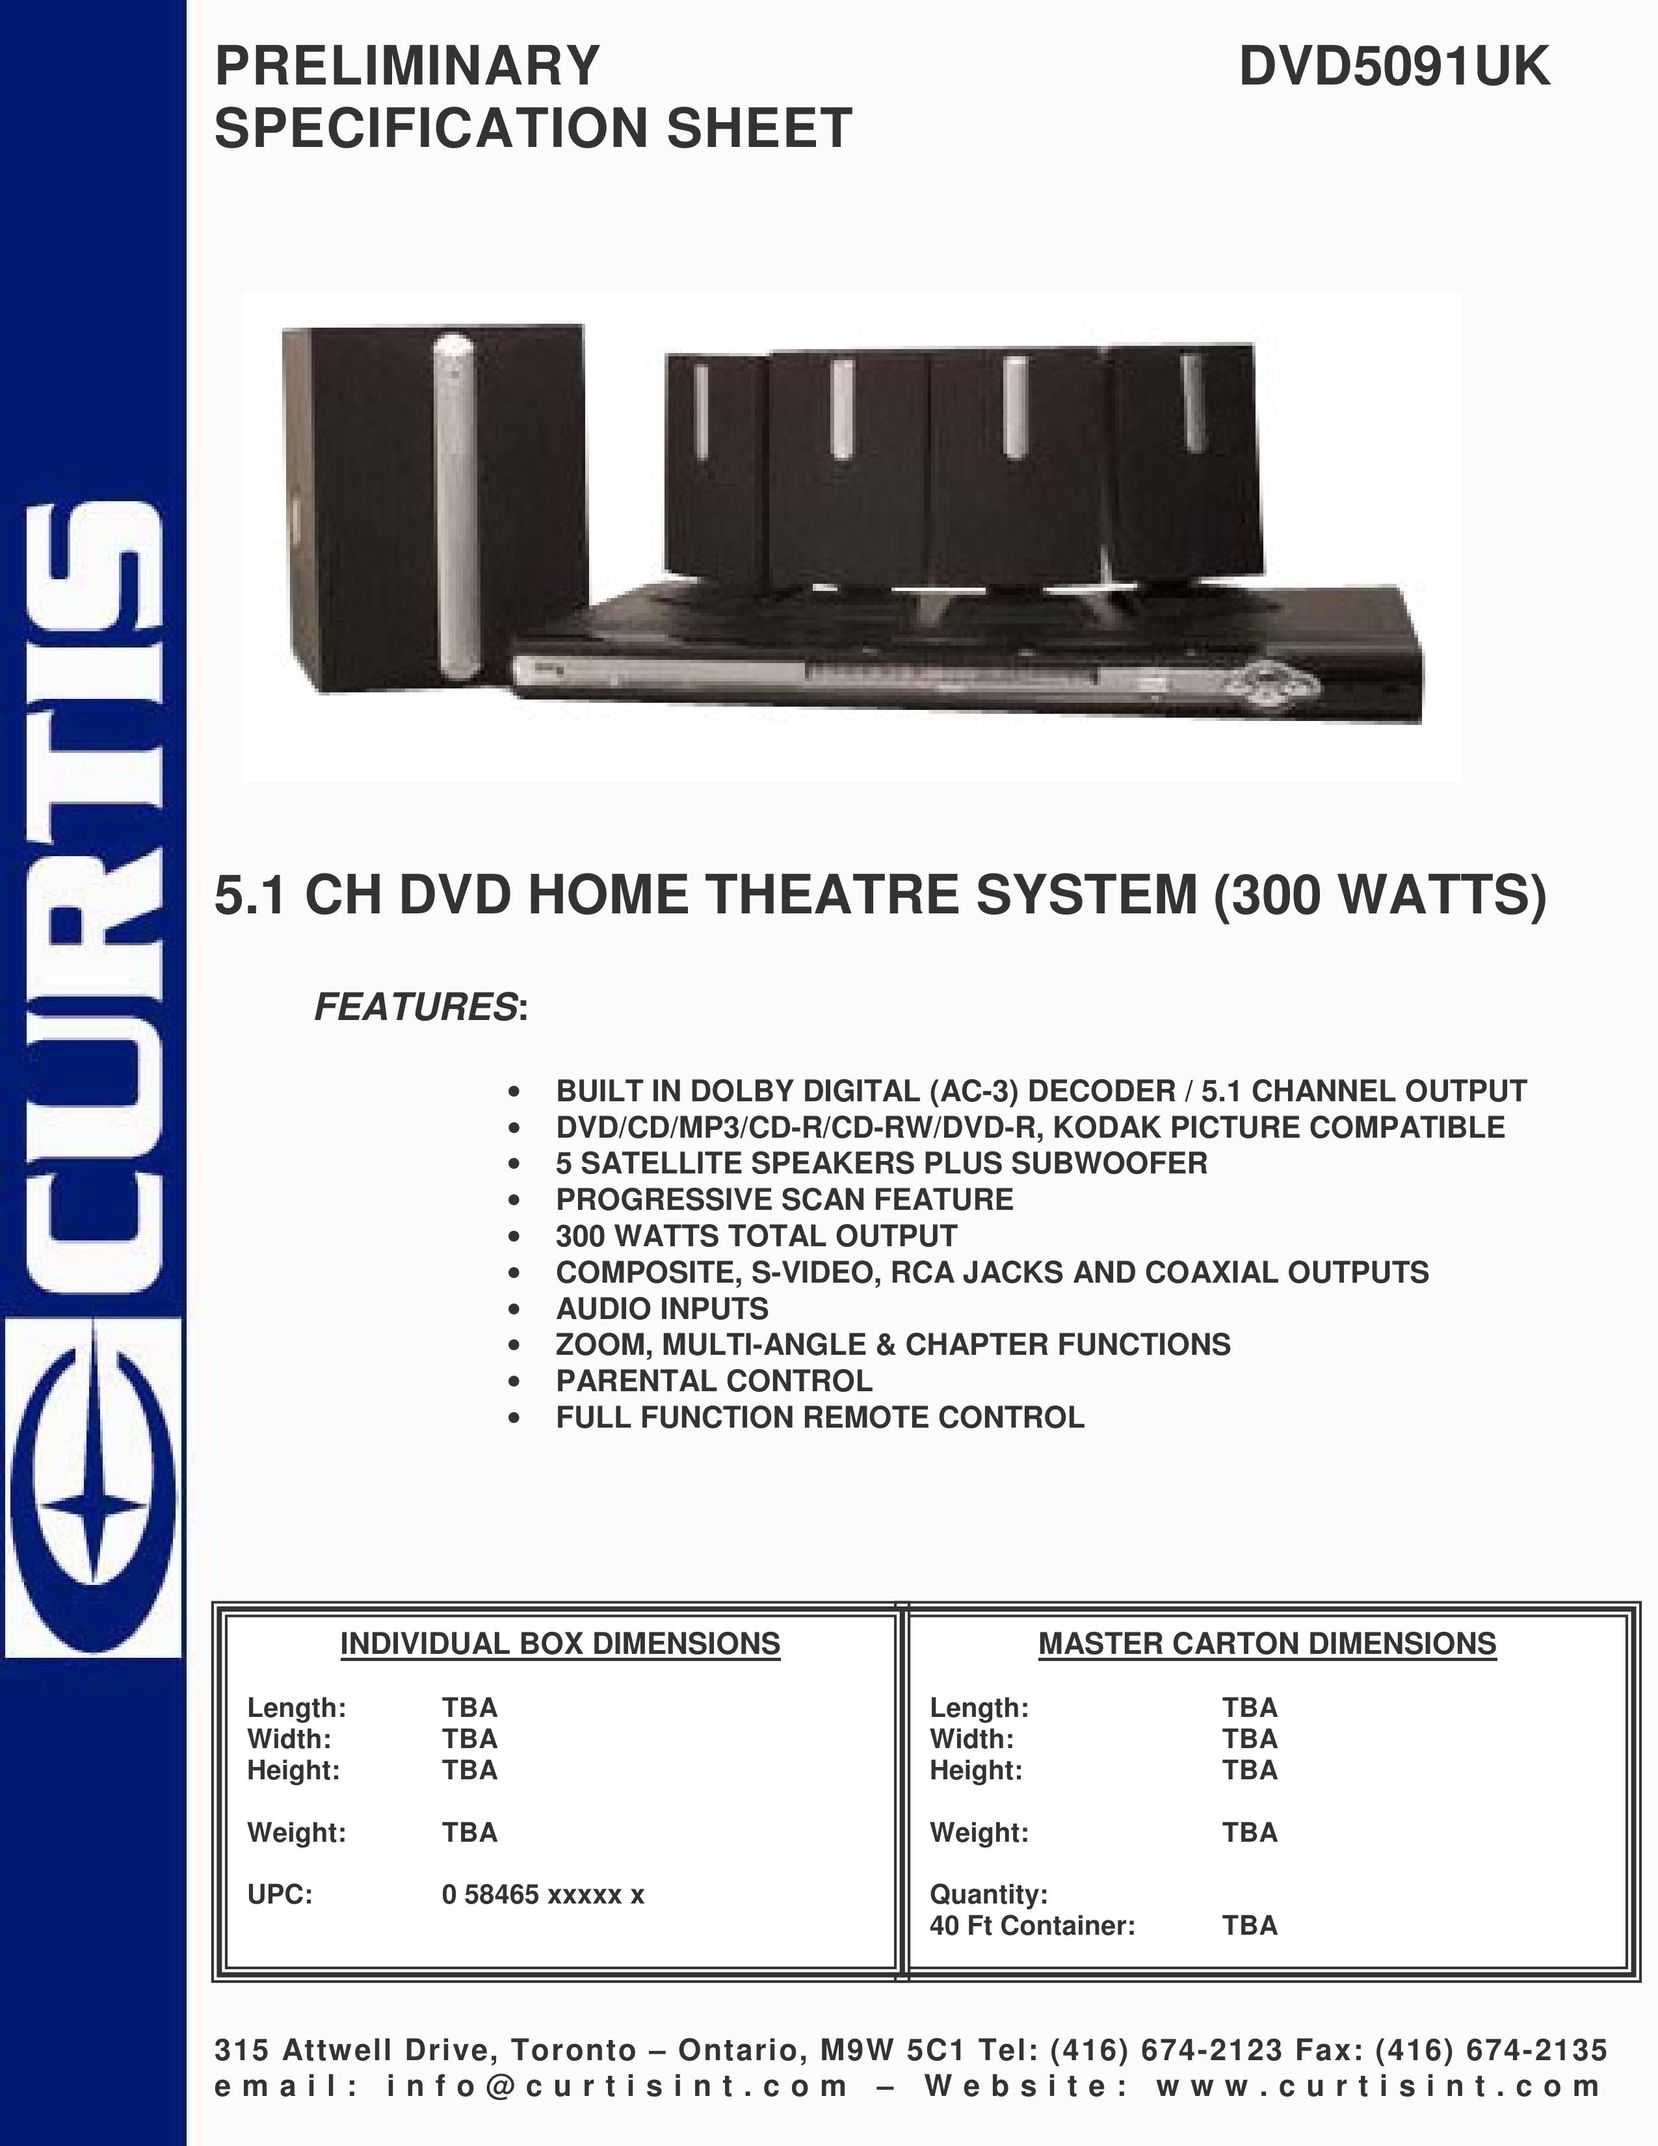 Curtis DVD5091UK DVD Player User Manual